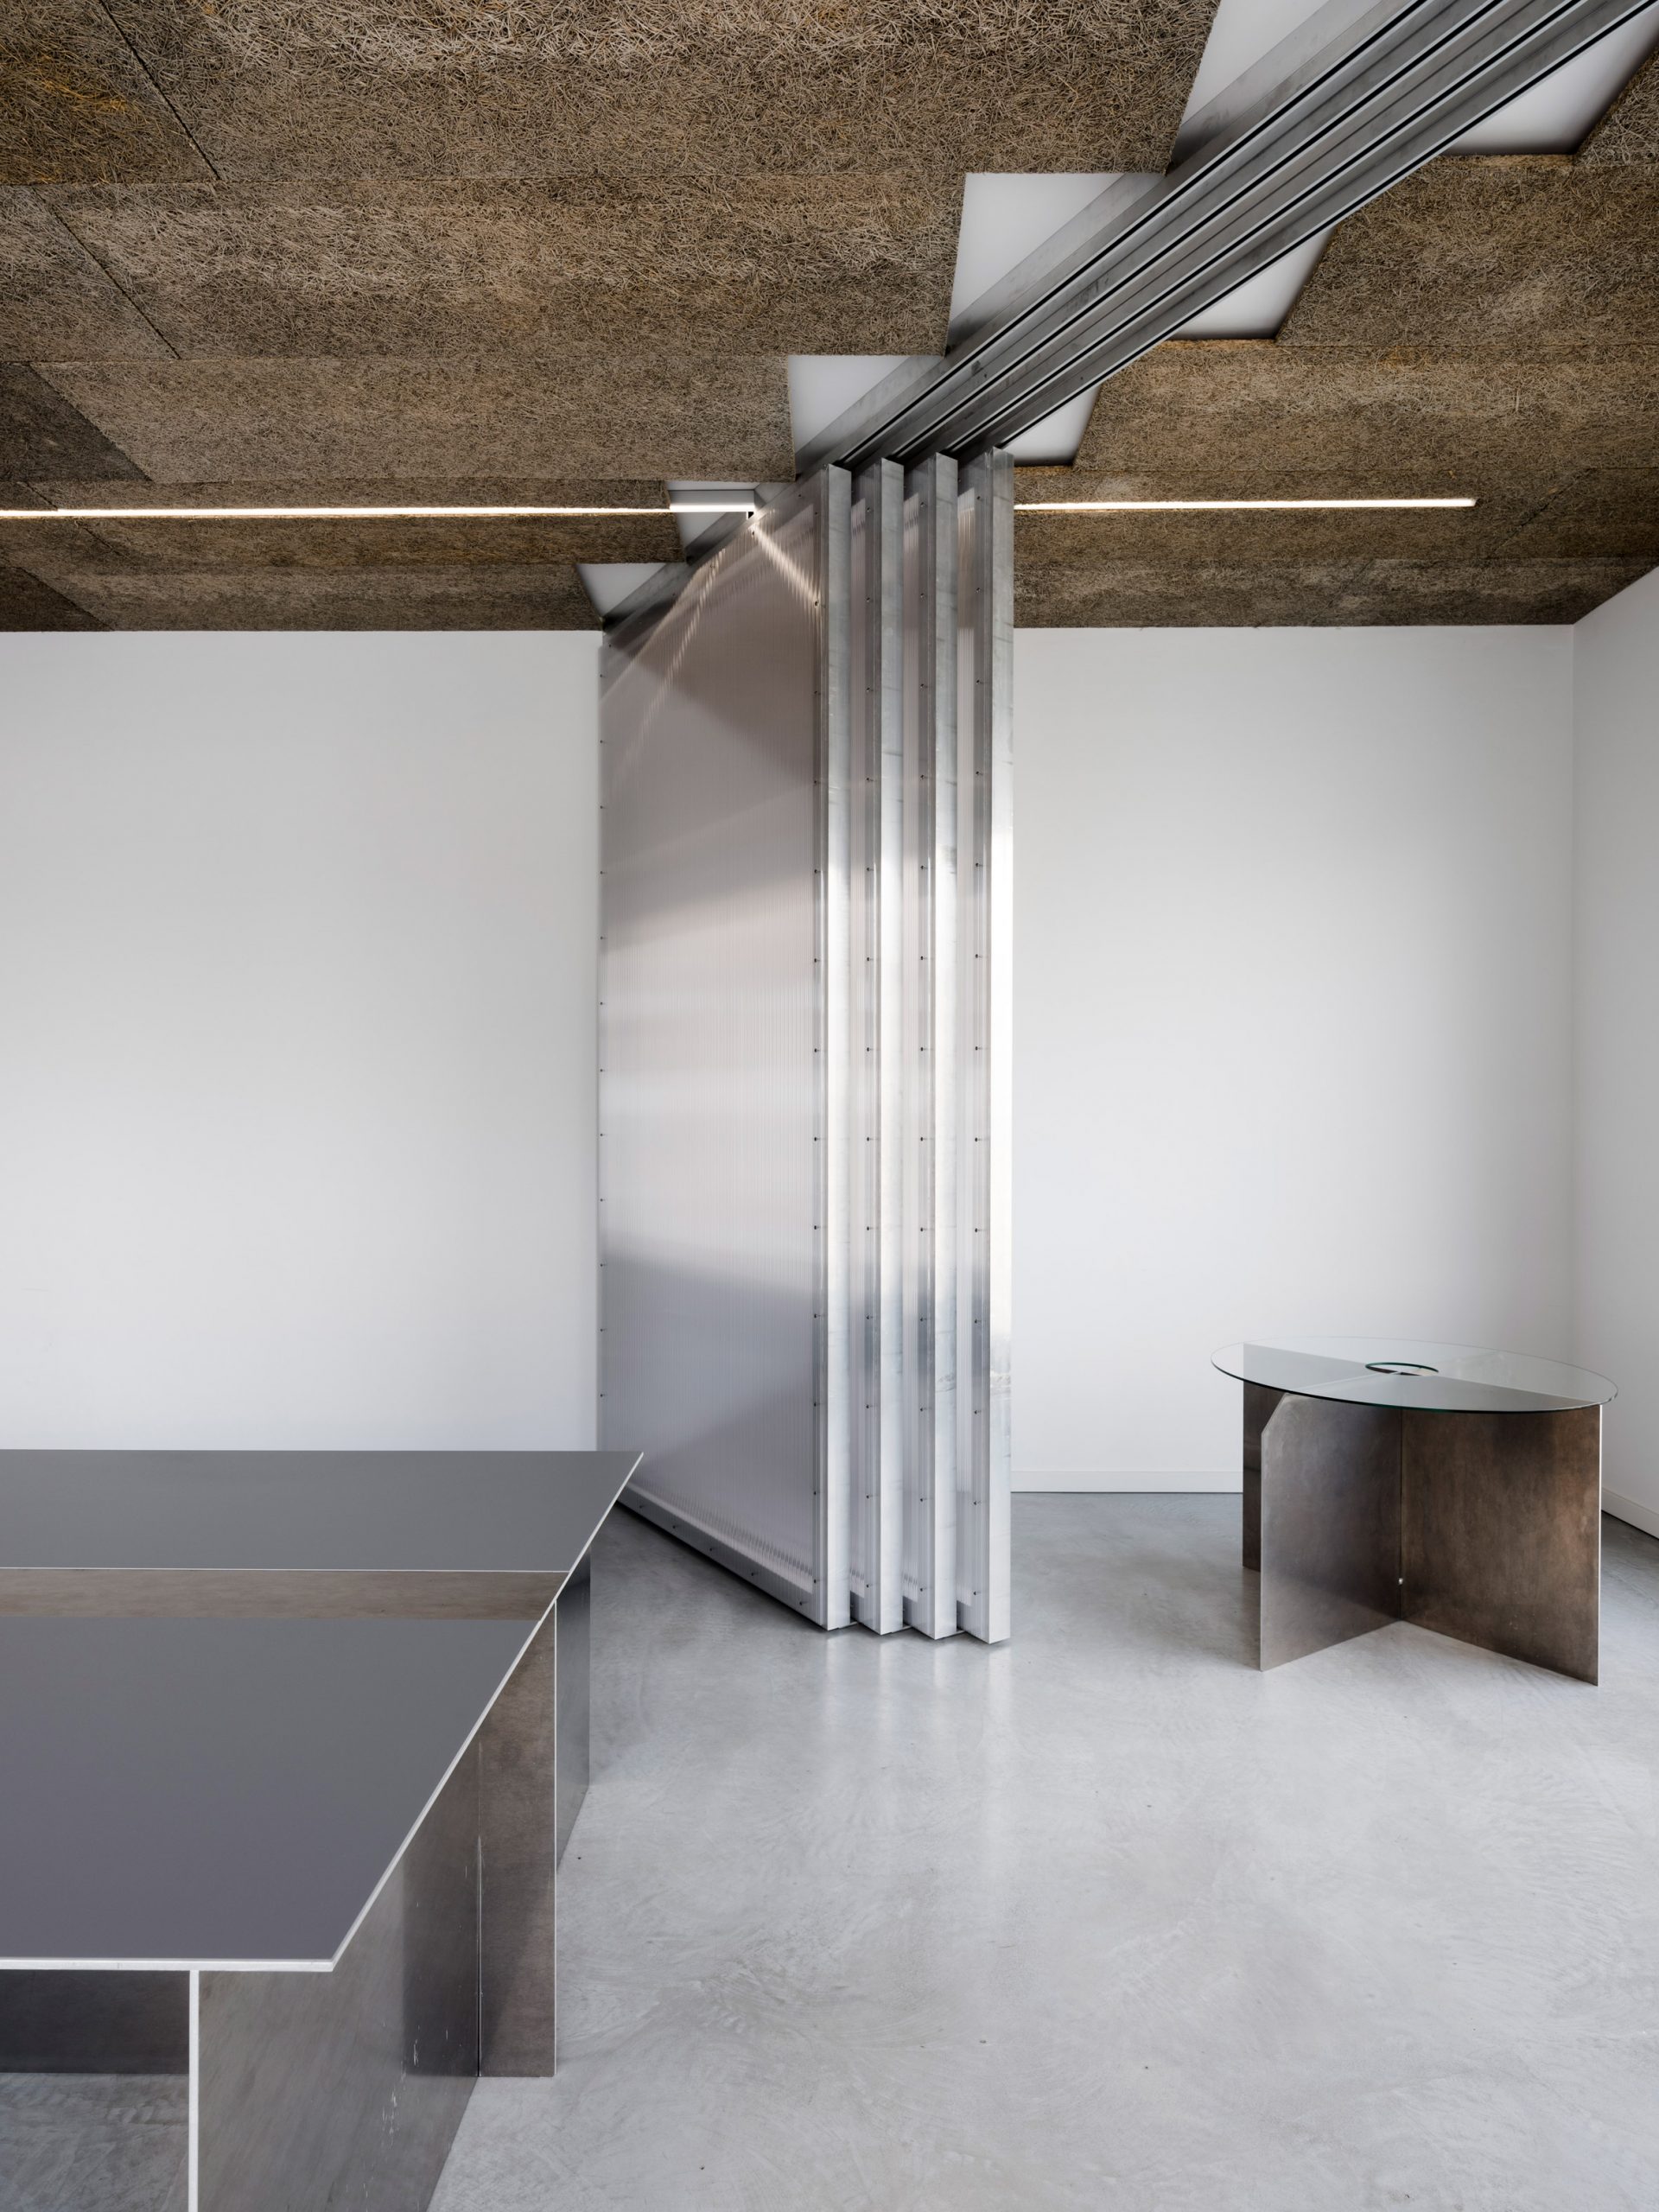 BAM office in Berlin designed by Gonzalez Haase AAS